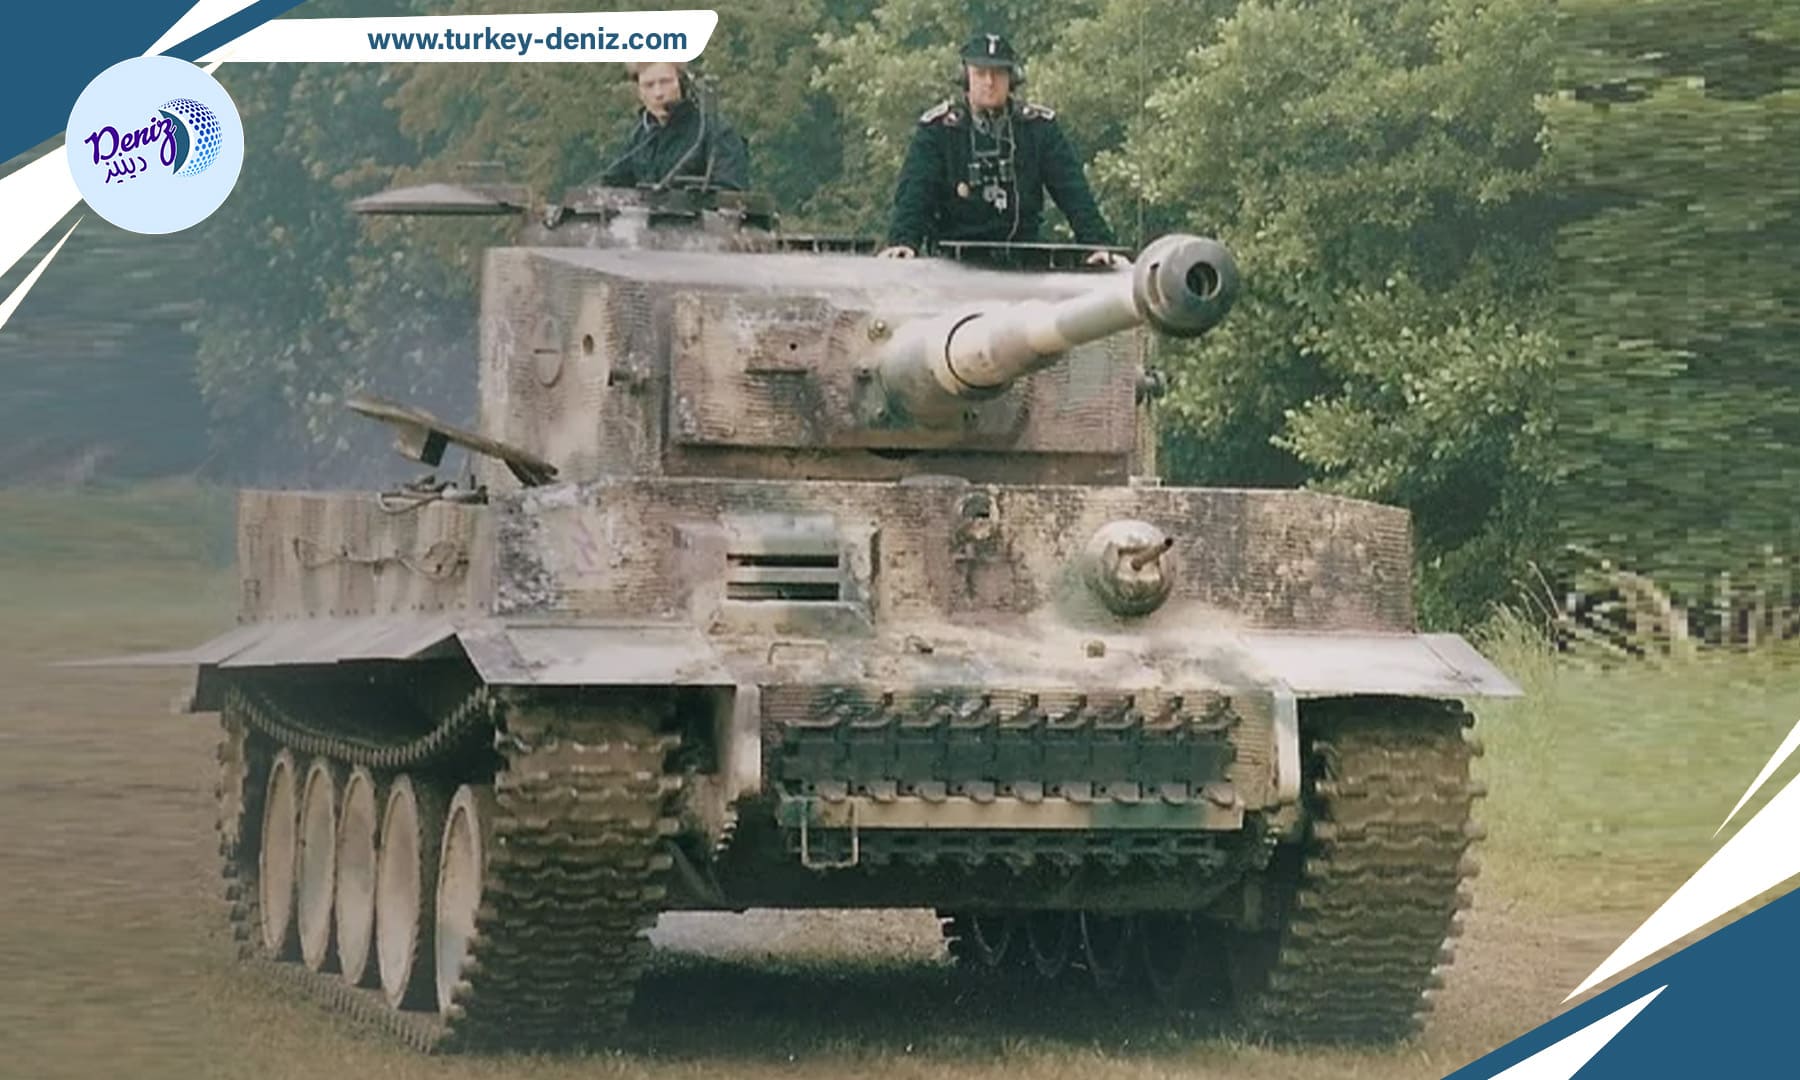 دبابات التايغر الألمانية تحسم المعارك بفضل مدافعها من عيار 88 ملم وسمك دروعها الذي يصل إلى 185 ملم